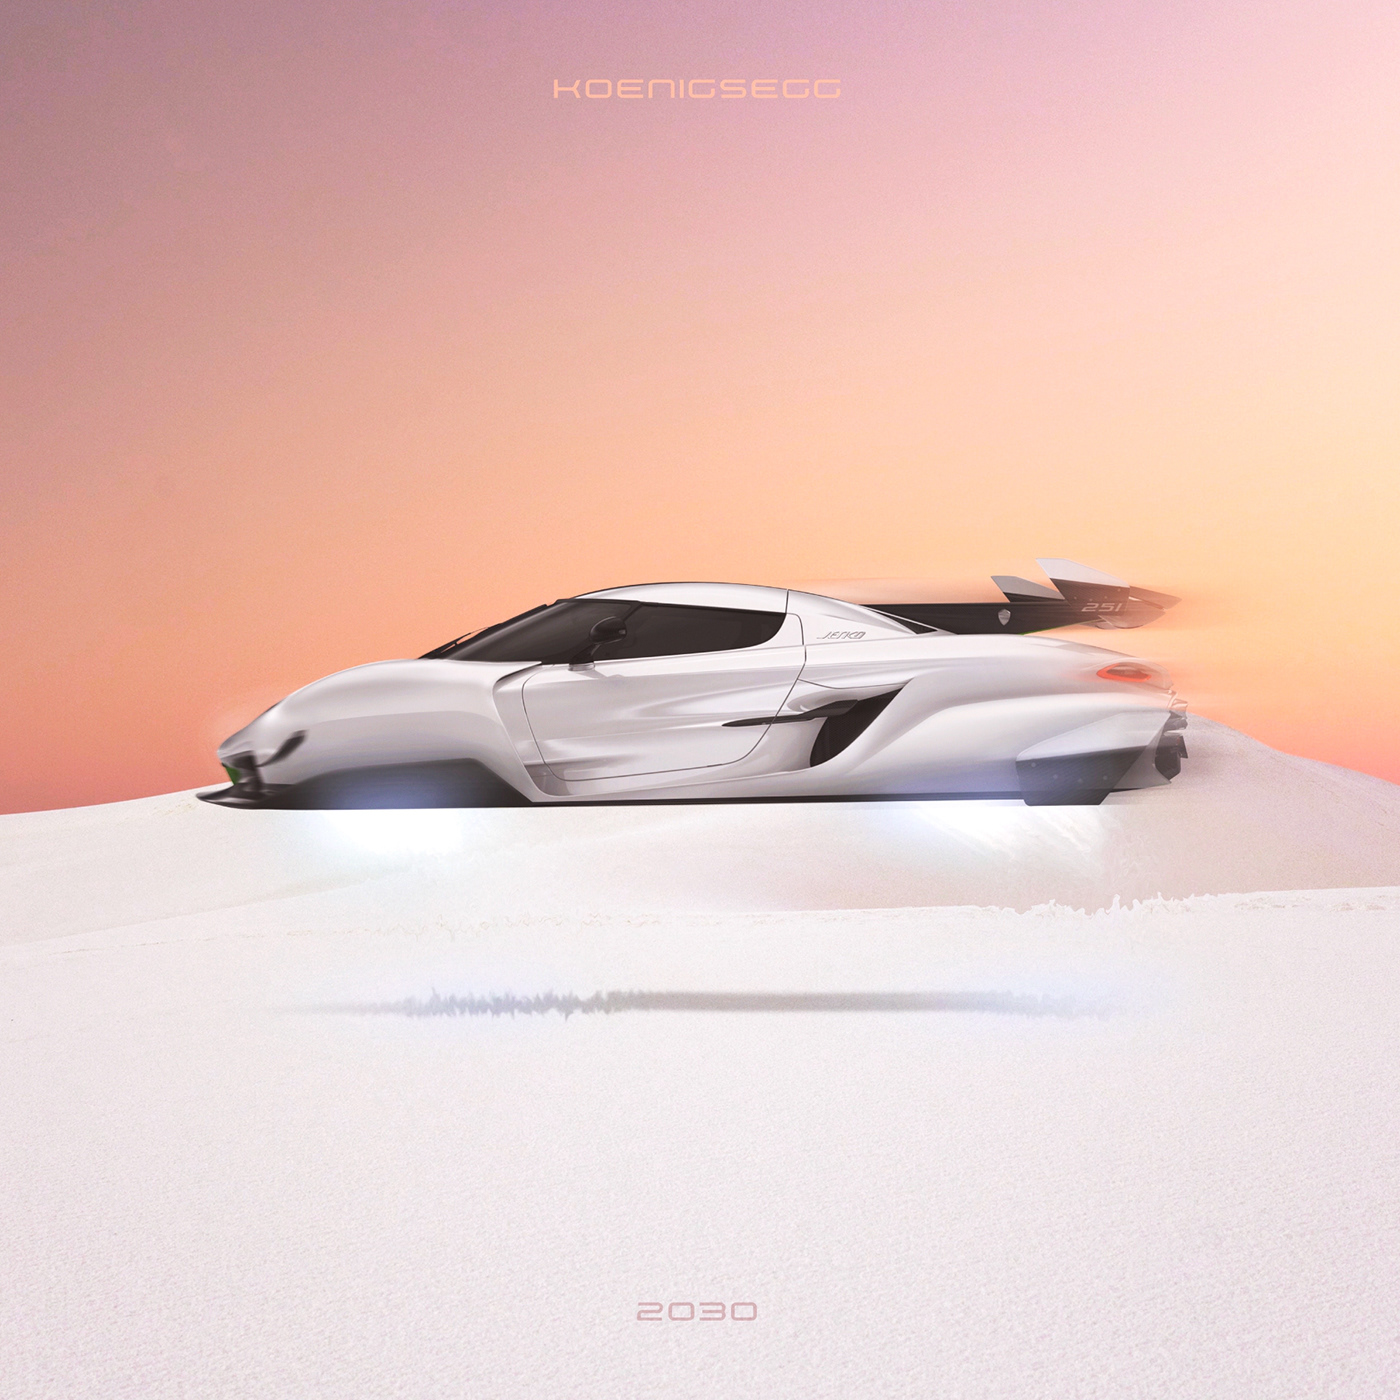 automobile Cars DeLorean FERRARI future futuristic graphic design  Koenigsegg lamborghini Porsche